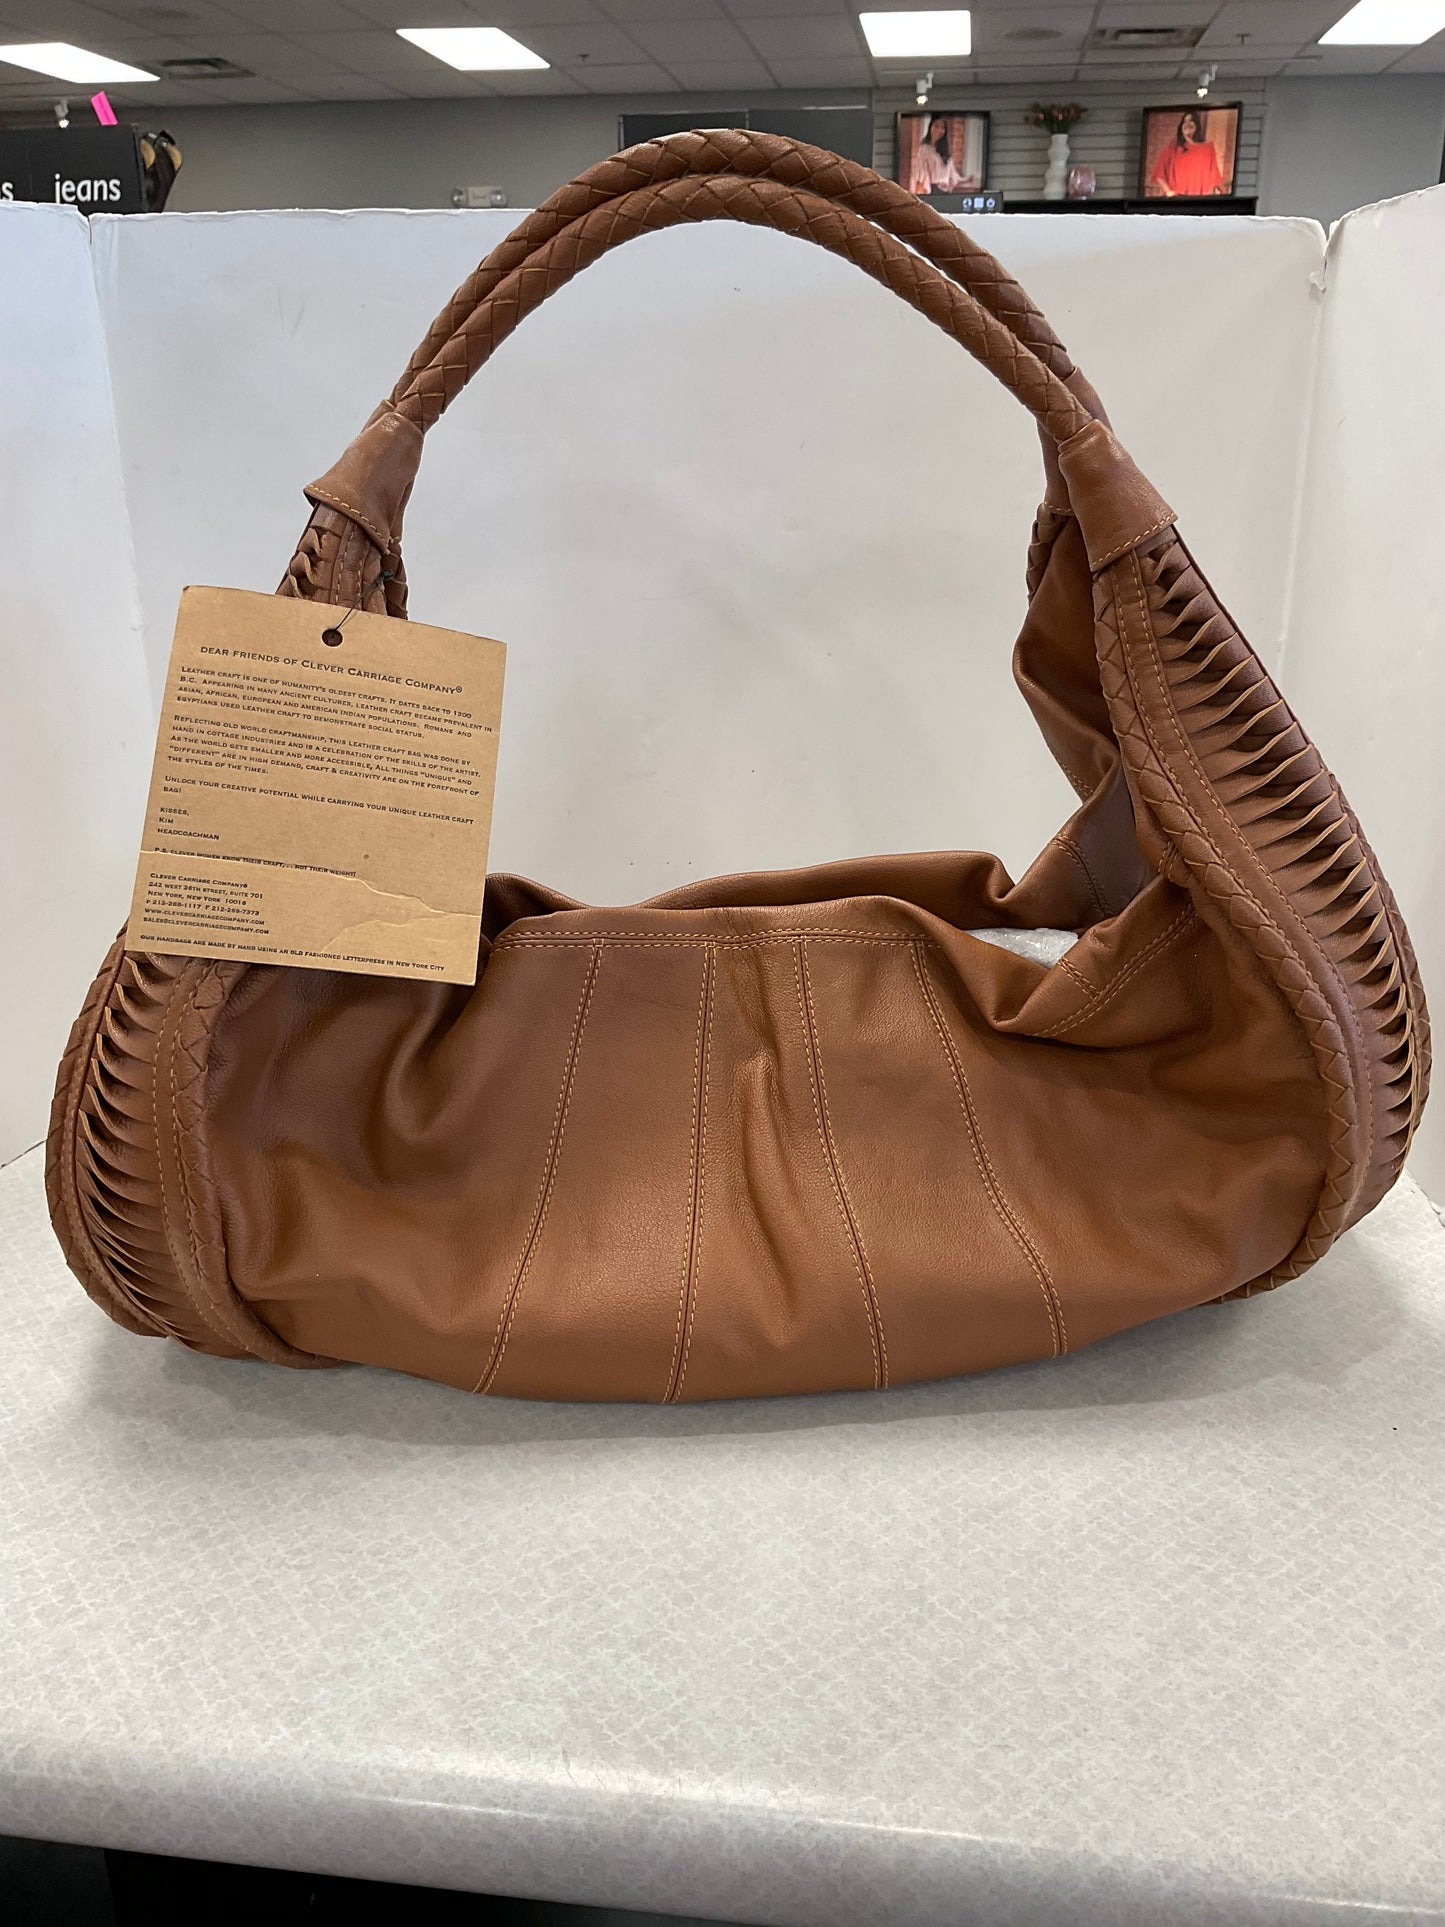 Handbag Leather Cma, Size Large